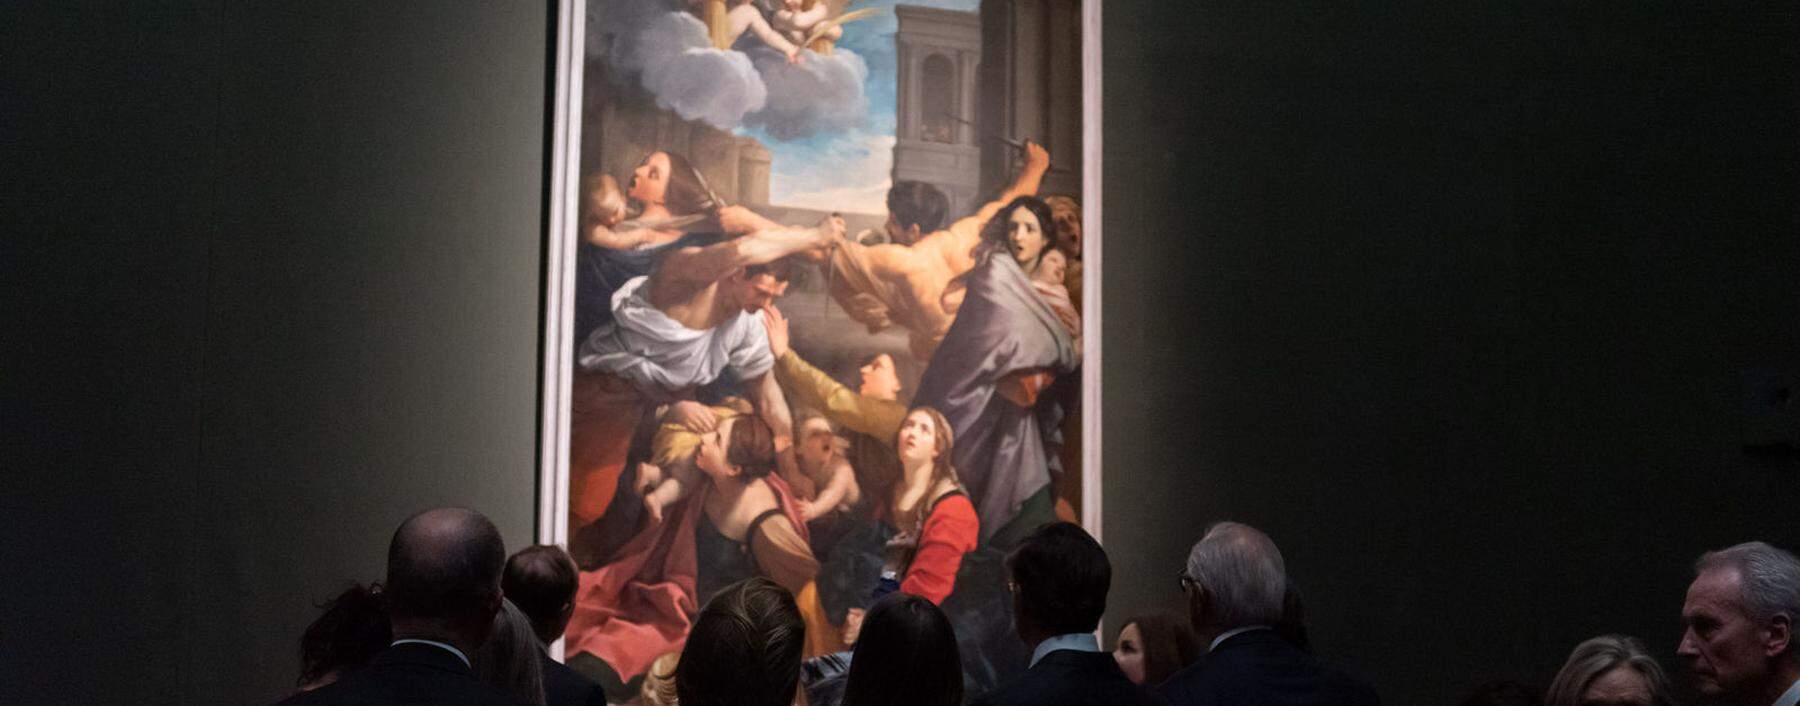 Daran hat man sich bereits gewöhnt: Besuchertrauben in der aktuellen Caravaggio- Bernini-Ausstellung des KHM.